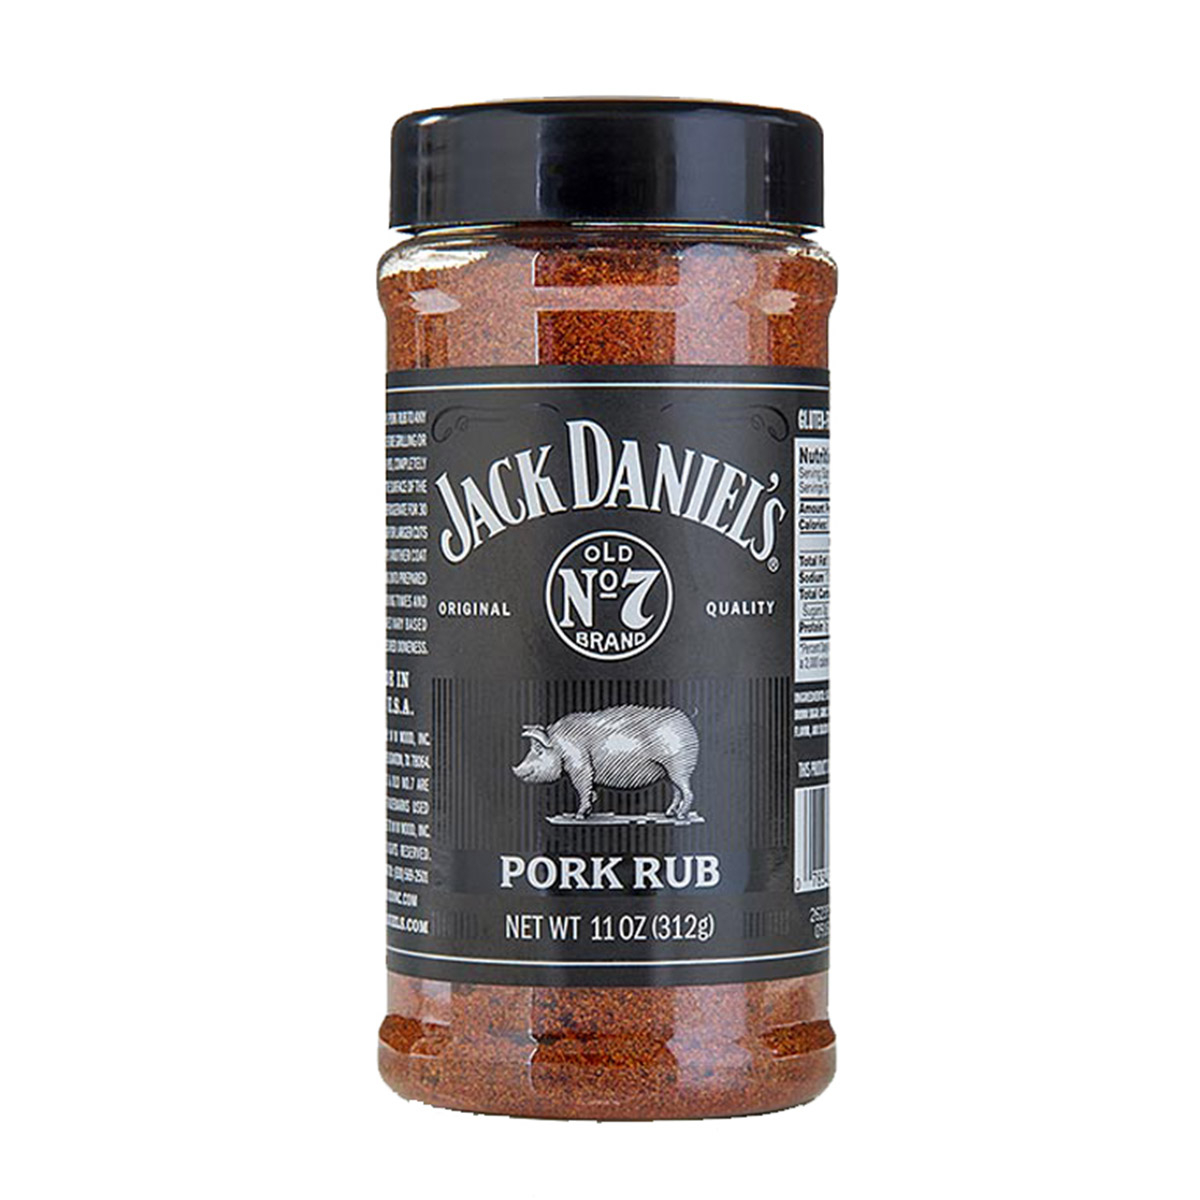 Μπαχαρικά Pork Rub, 310g - Jack Daniel's®️